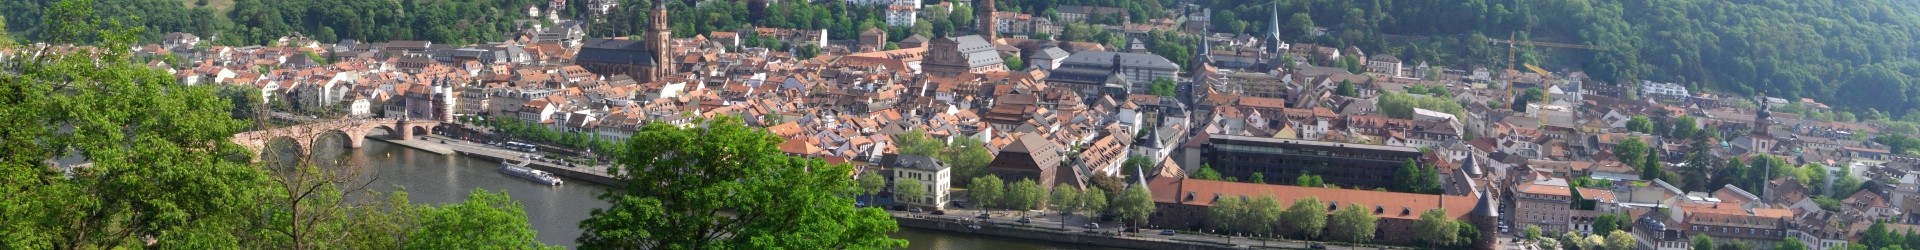 Artikel in der RNZ: Das Heidelberger Brückentor